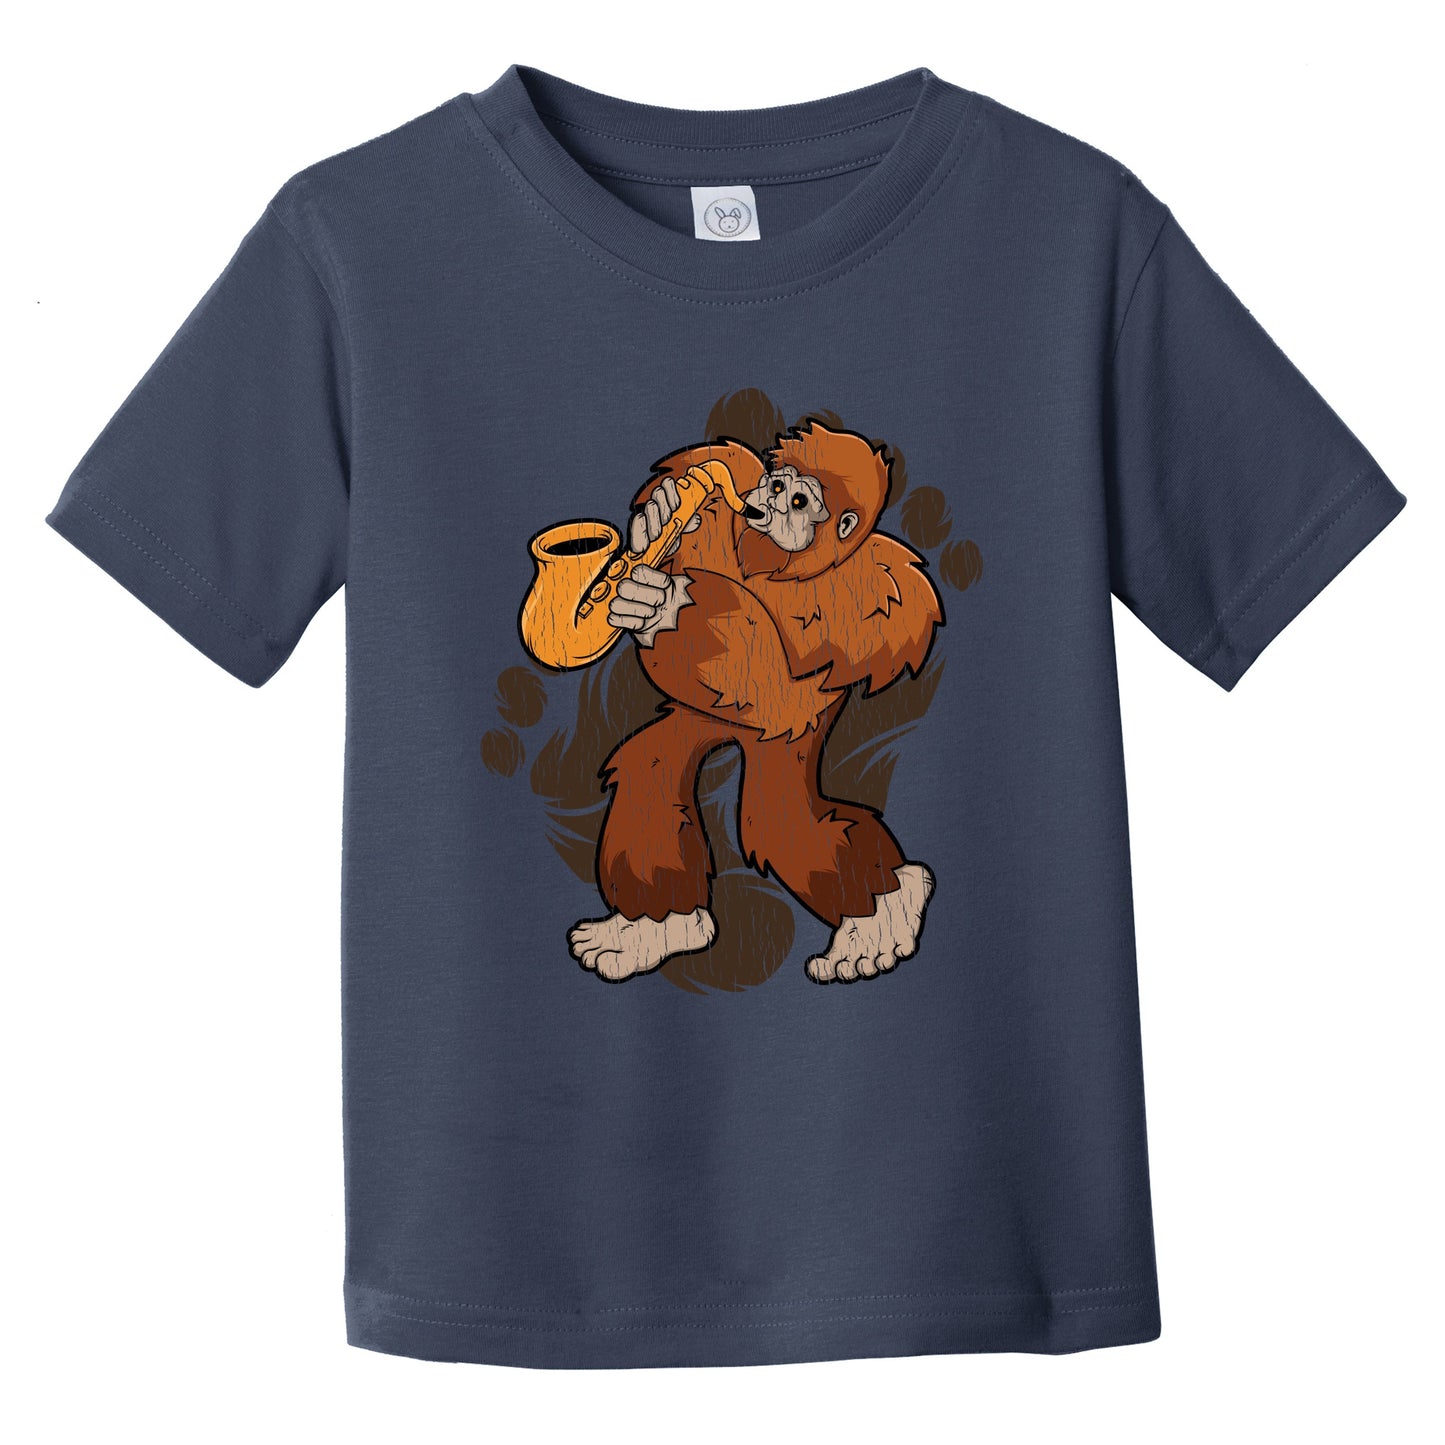 Toddler Bigfoot Saxophone Shirt - Sasquatch Playing Sax Infant Toddler T-Shirt